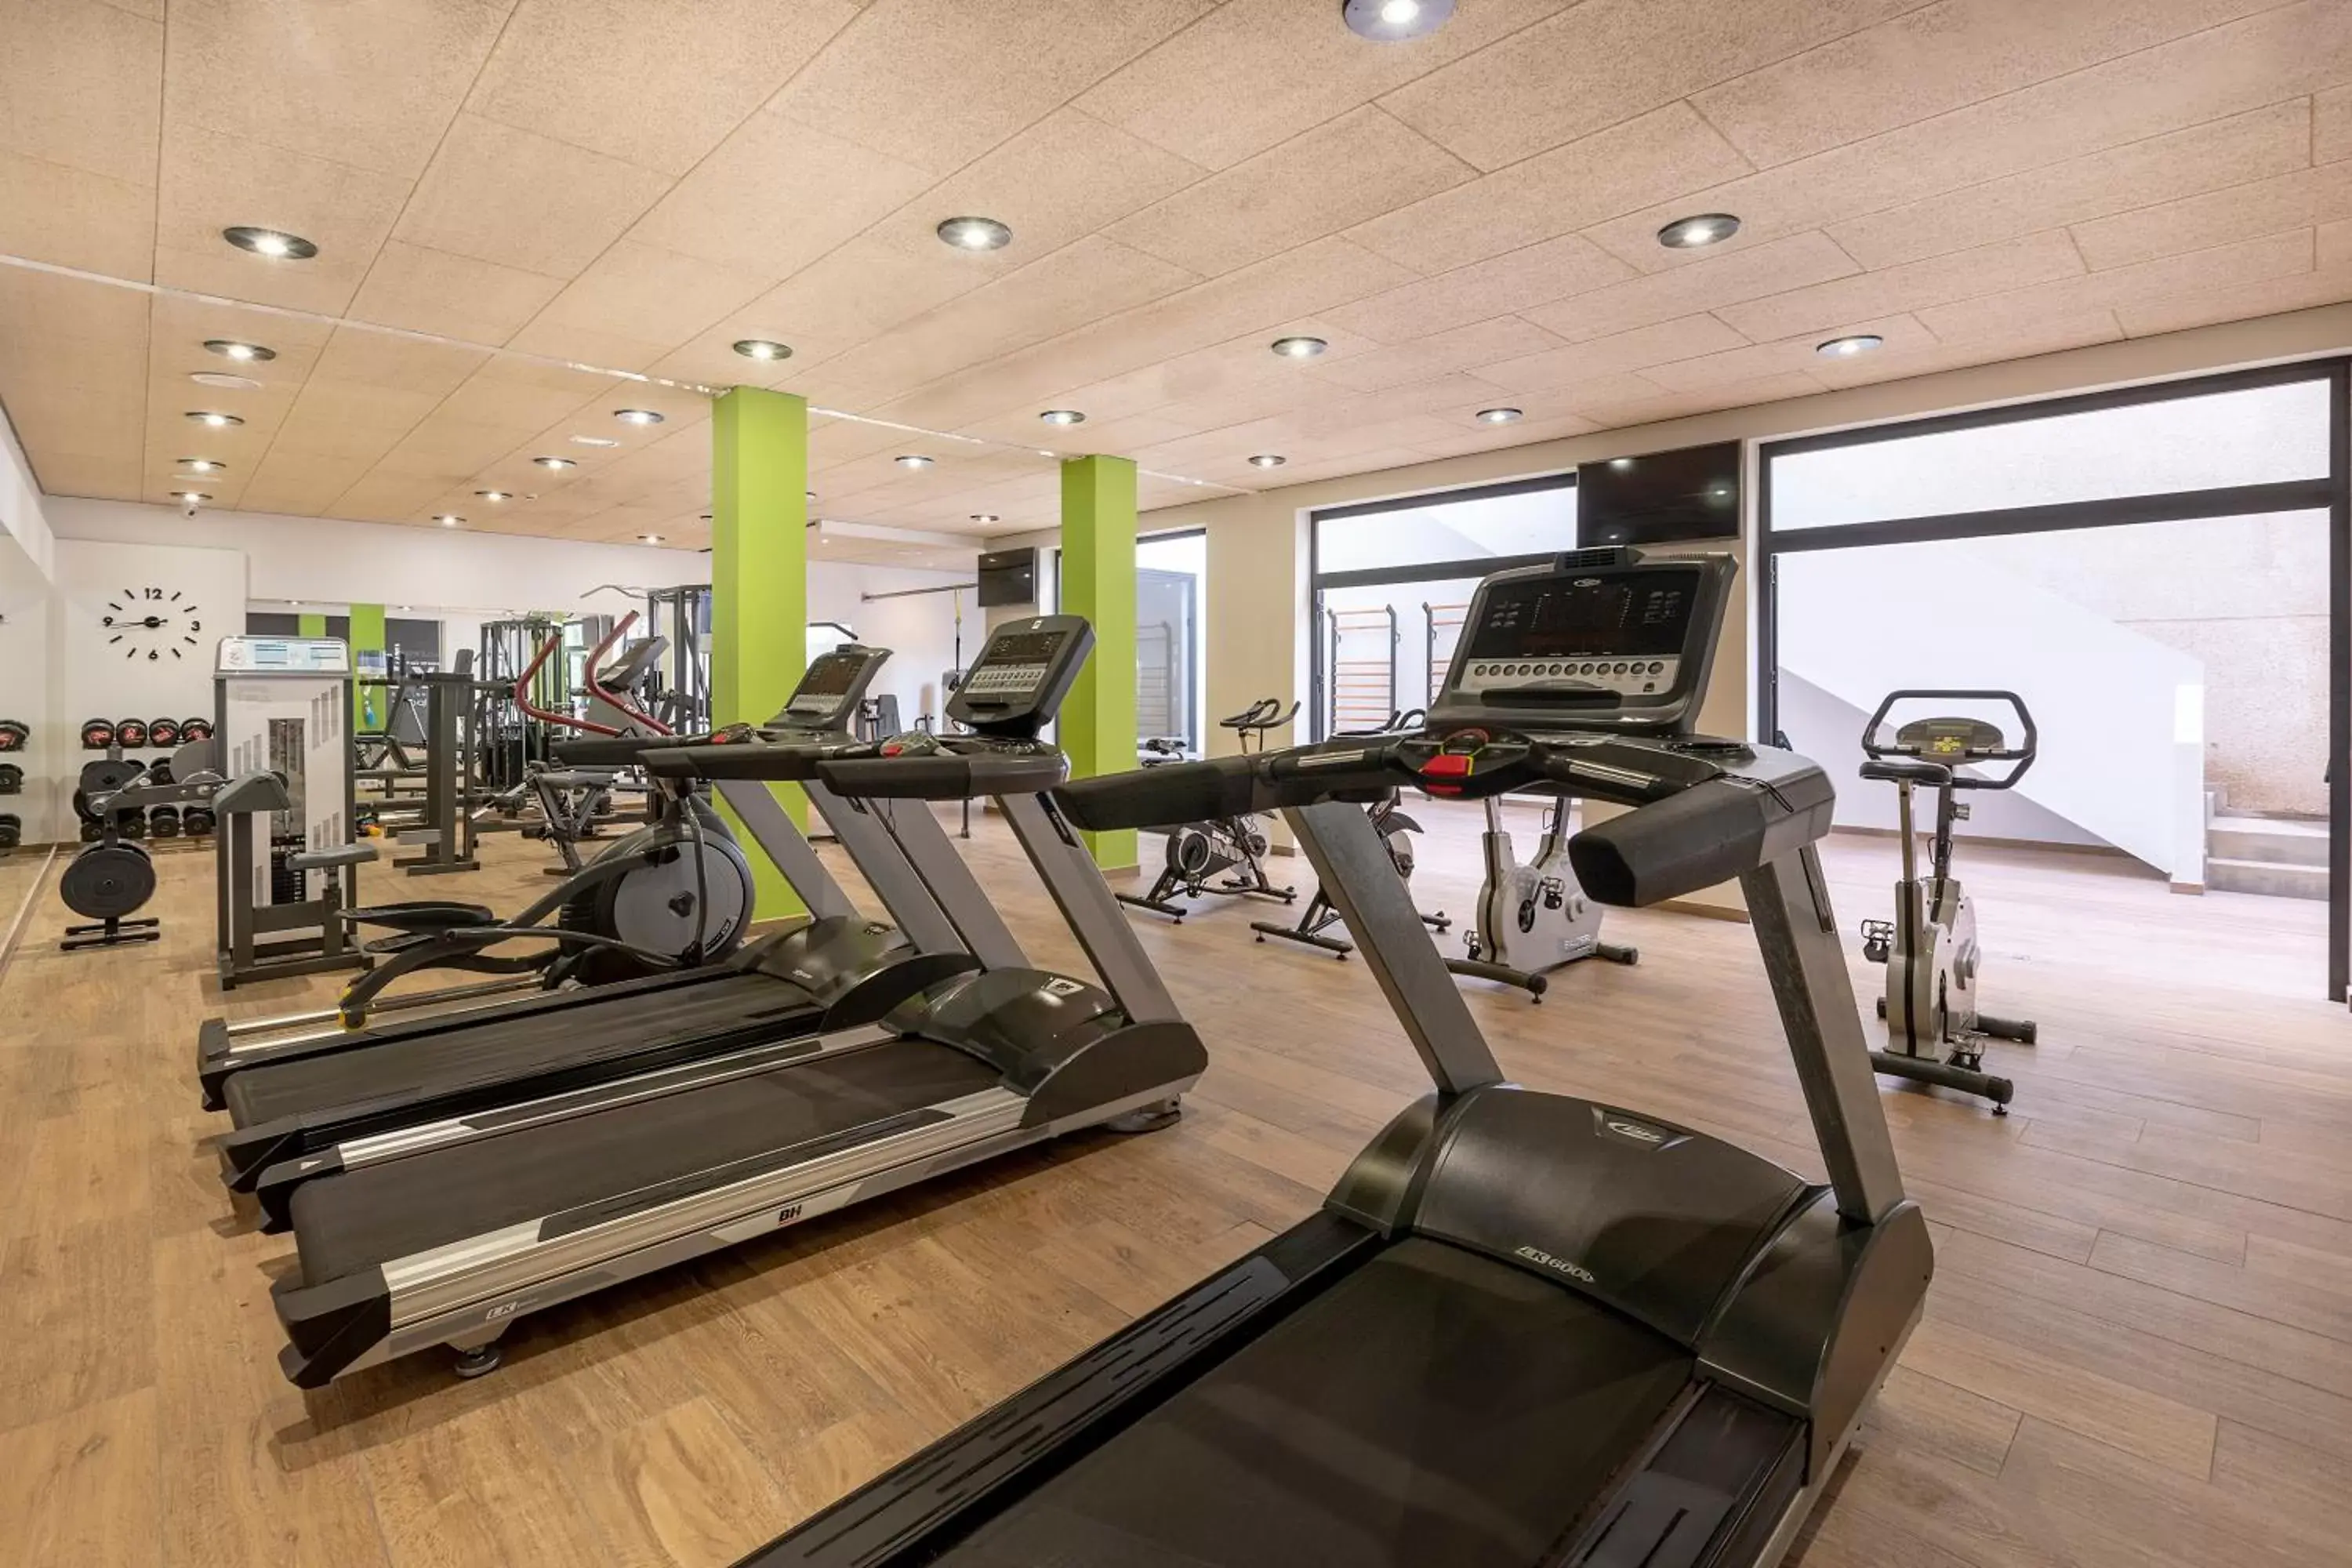 Fitness centre/facilities, Fitness Center/Facilities in Hotel Costa Calero Thalasso & Spa